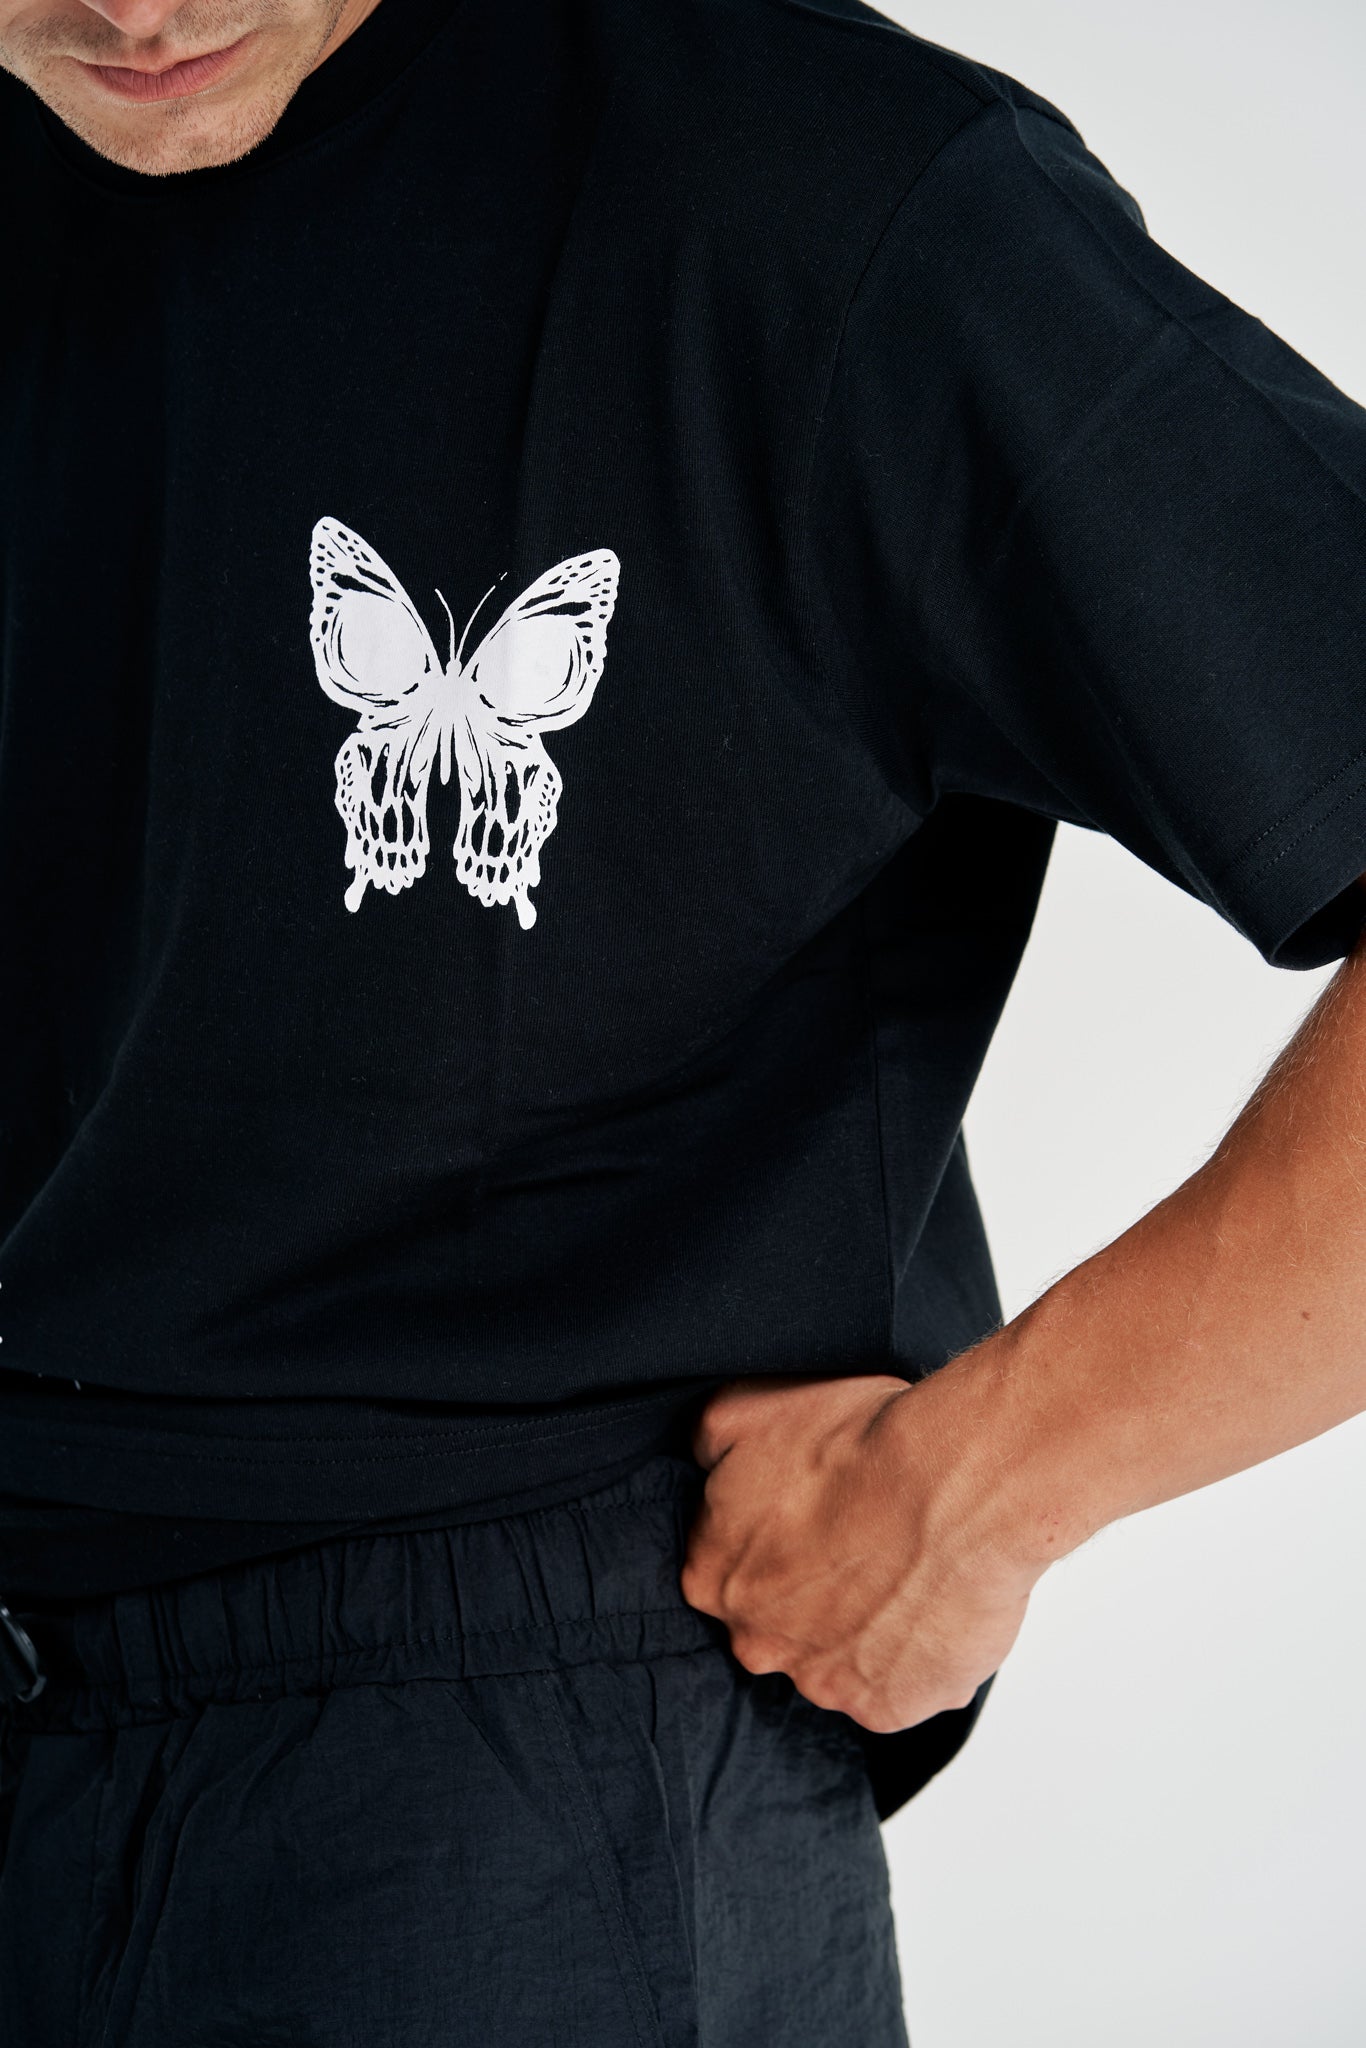 Butterfly Effect Relaxed Tee Black - UNEFFECTED STUDIOS® - T-shirt - UNEFFECTED STUDIOS®